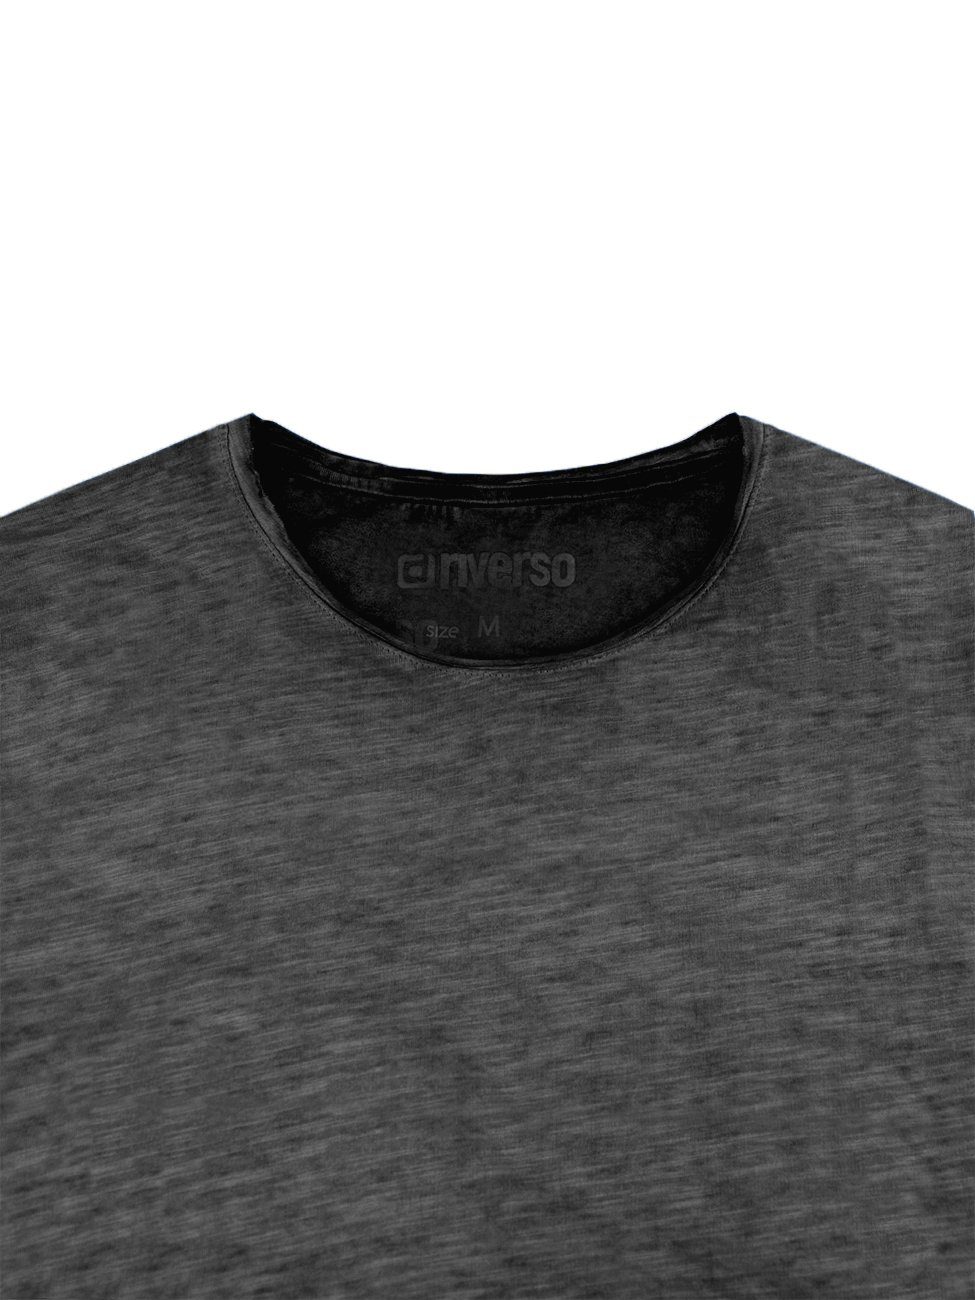 (1-tlg) Fit 100% Basic Rundhalsausschnitt Kurzarm Shirt riverso Basic Baumwolle T-Shirt Shirt Tee Grey Anthracite Herren Regular aus RIVMatteo mit